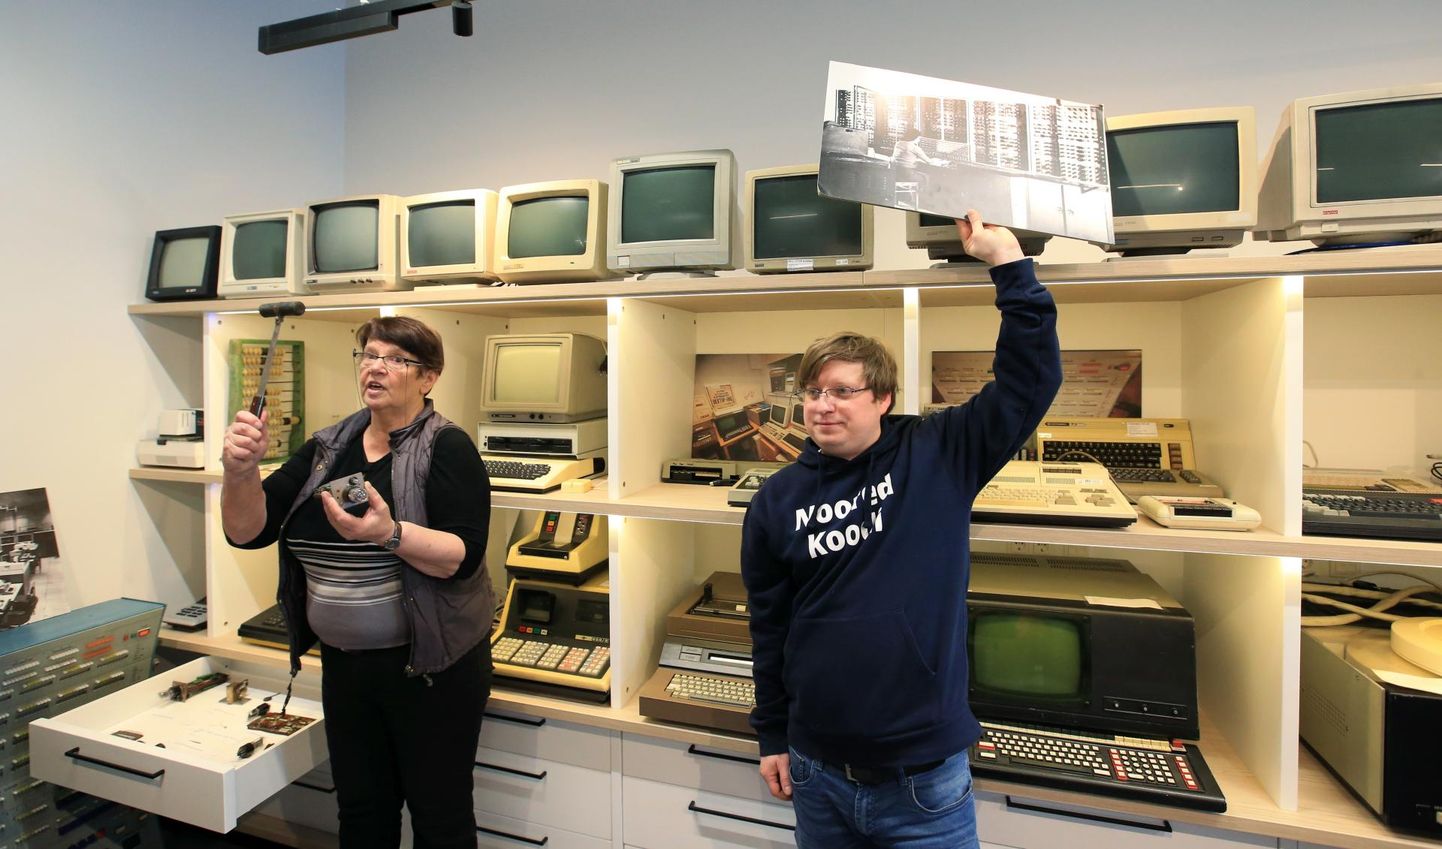 Anne Villems ja Alo Peets rääkisid alustuseks Eesti esimesest elektronarvutist Ural, millest nad näitasid muu hulgas suurt fotot ja mõnda praeguseni alles hoitud väikest osa.